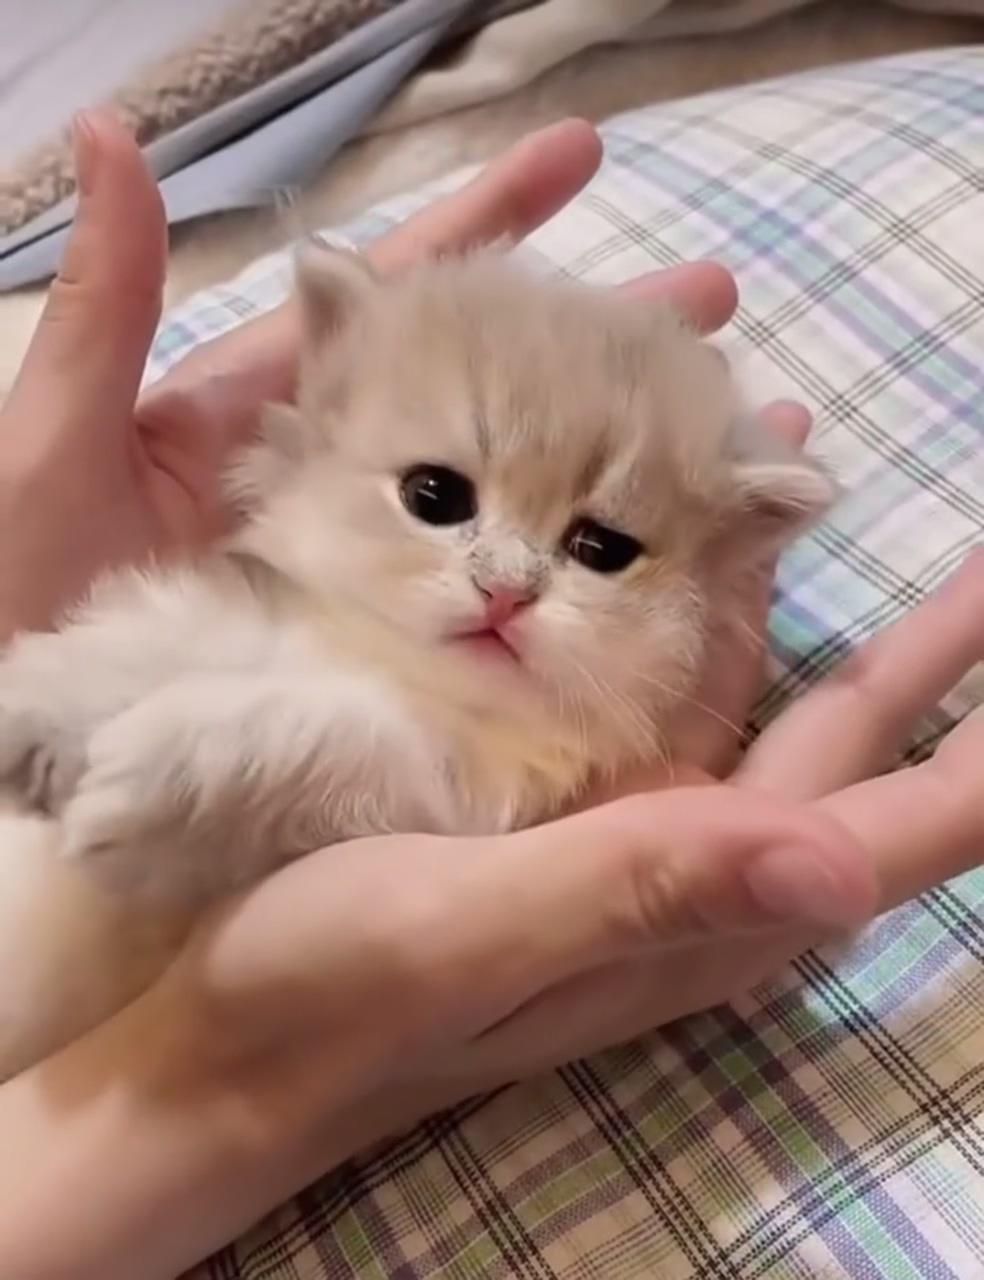 Cute kitten video; cute little kittens